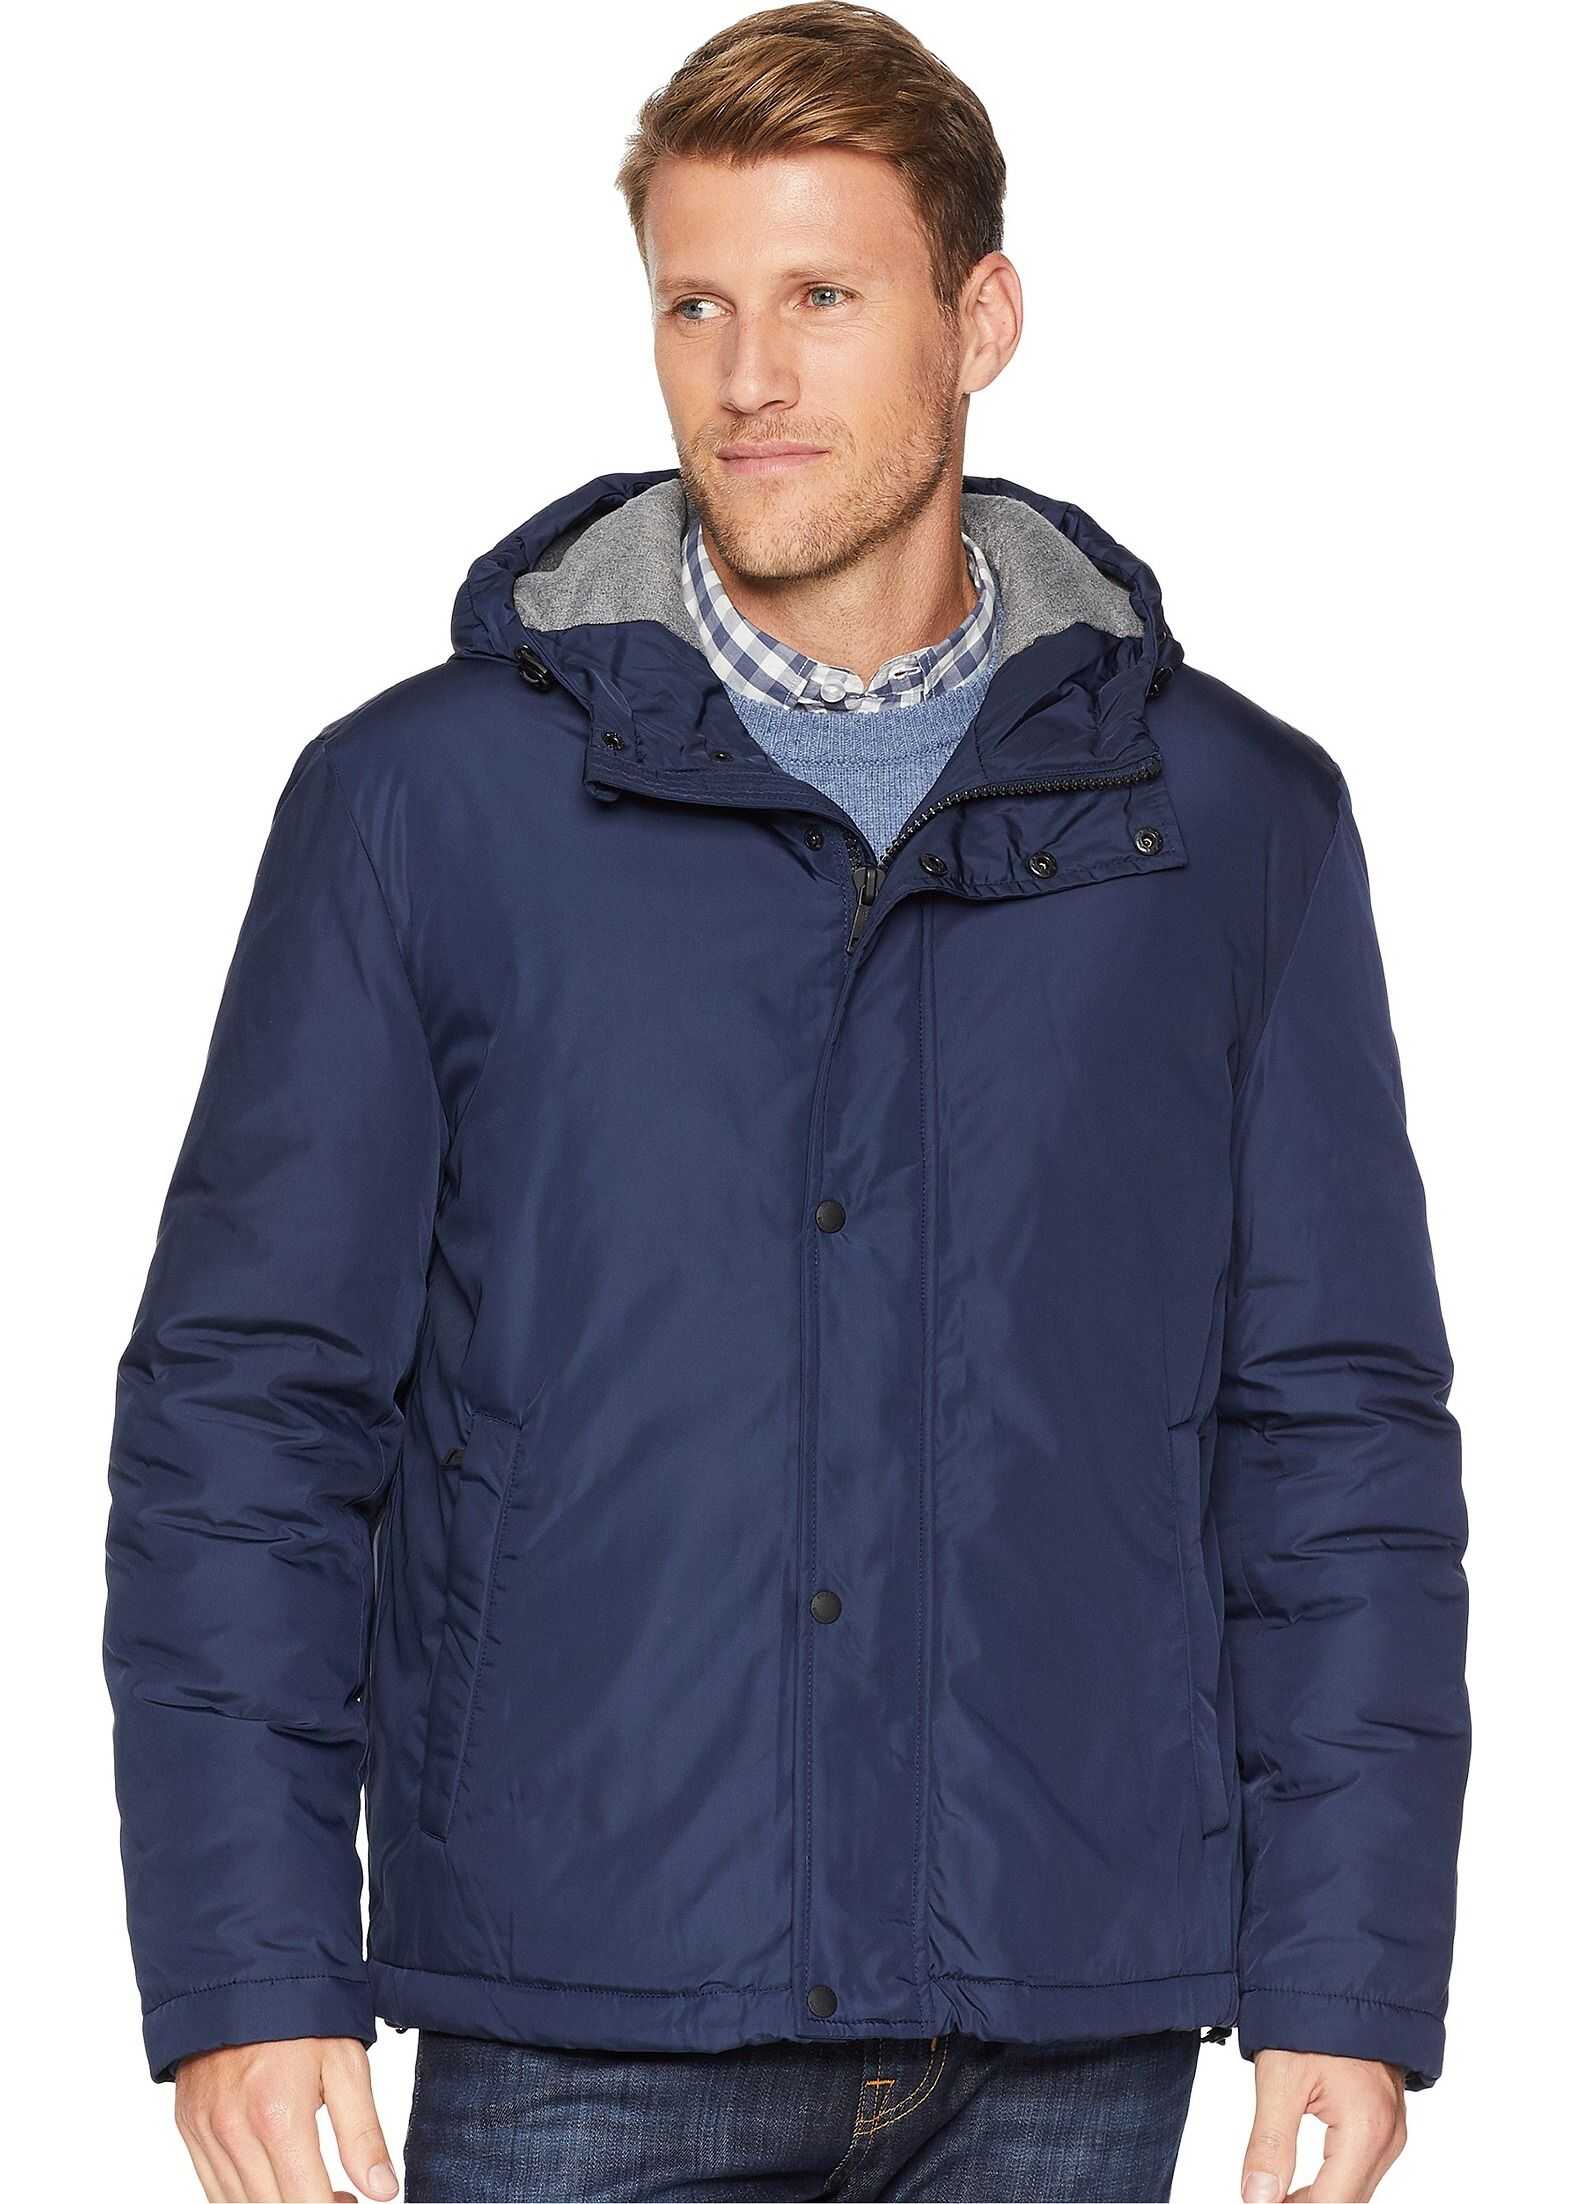 Cole Haan Oxford Rain Zip Front Jacket Navy